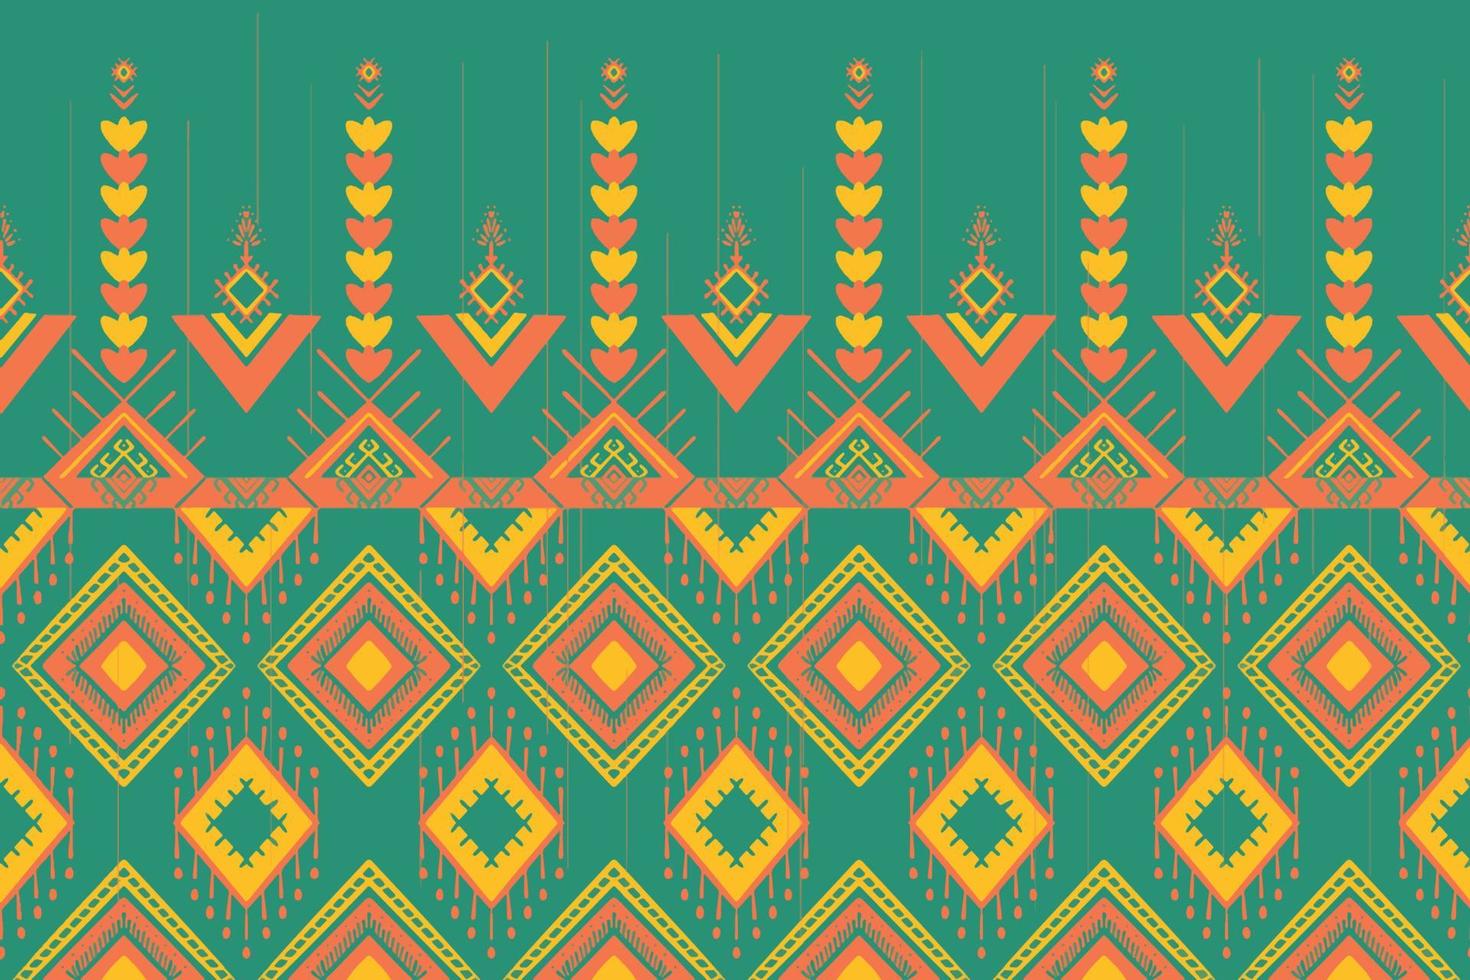 laranja amarelo no verde. design tradicional de padrão oriental étnico geométrico para plano de fundo, tapete, papel de parede, roupas, embrulho, batik, tecido, estilo de bordado de ilustração vetorial vetor